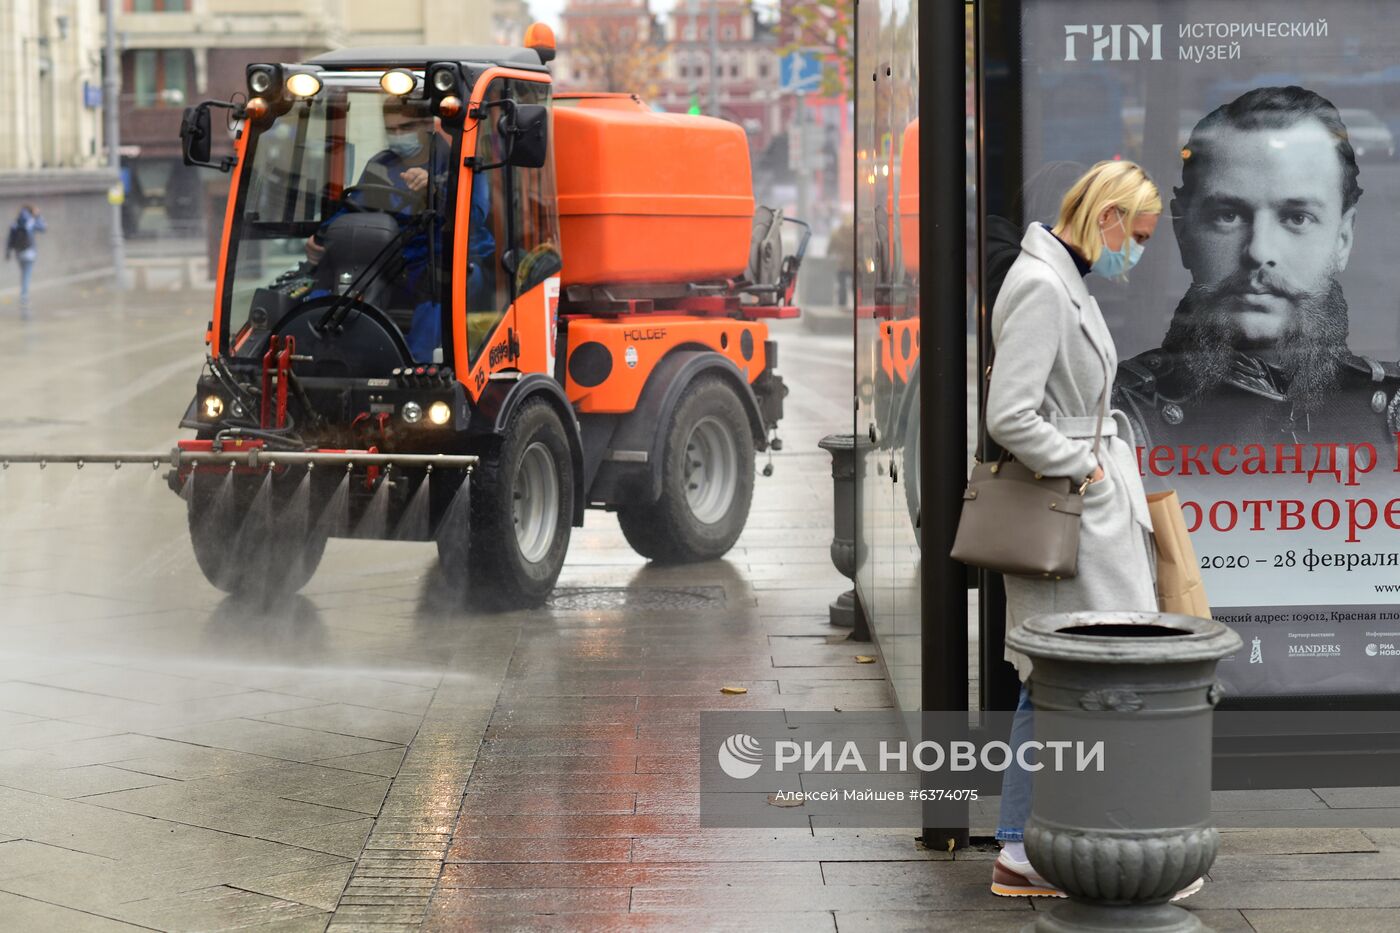 Промывка дорог и тротуаров концентрированным моющим средством в рамках подготовки к зиме